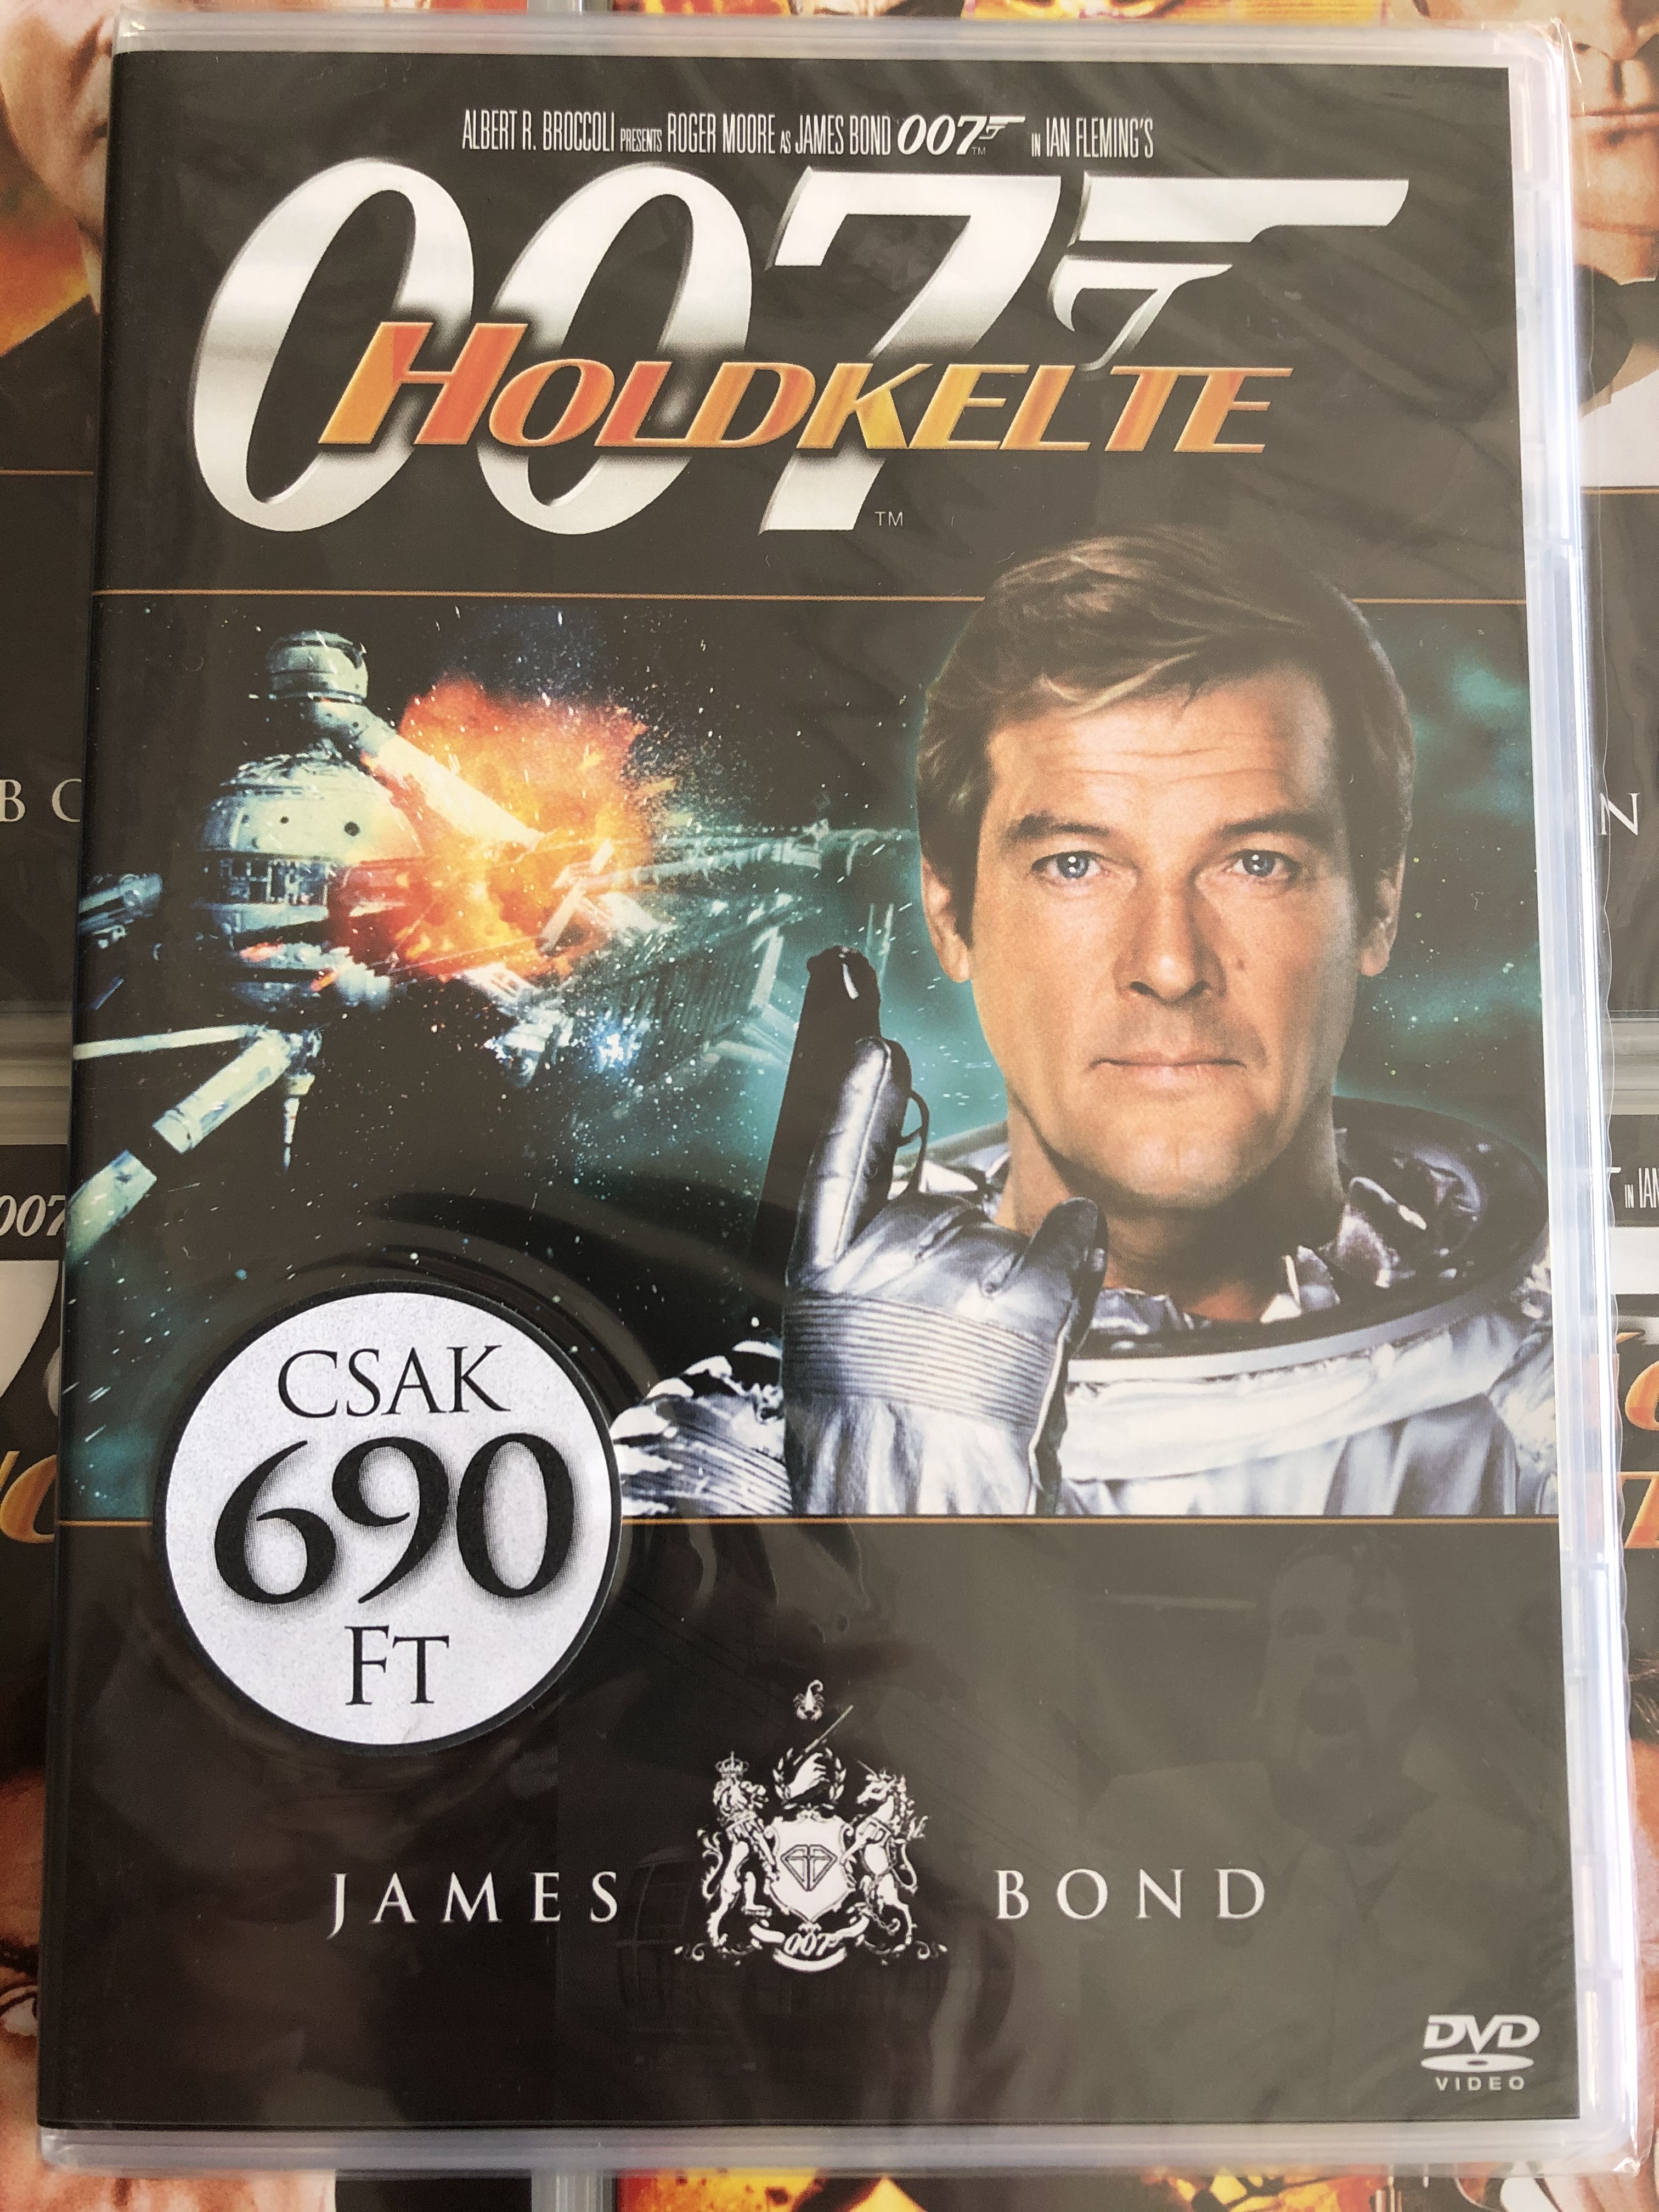 James Bond 007 - Moonraker DVD 1979 James Bond - Holdkelte 1.JPG